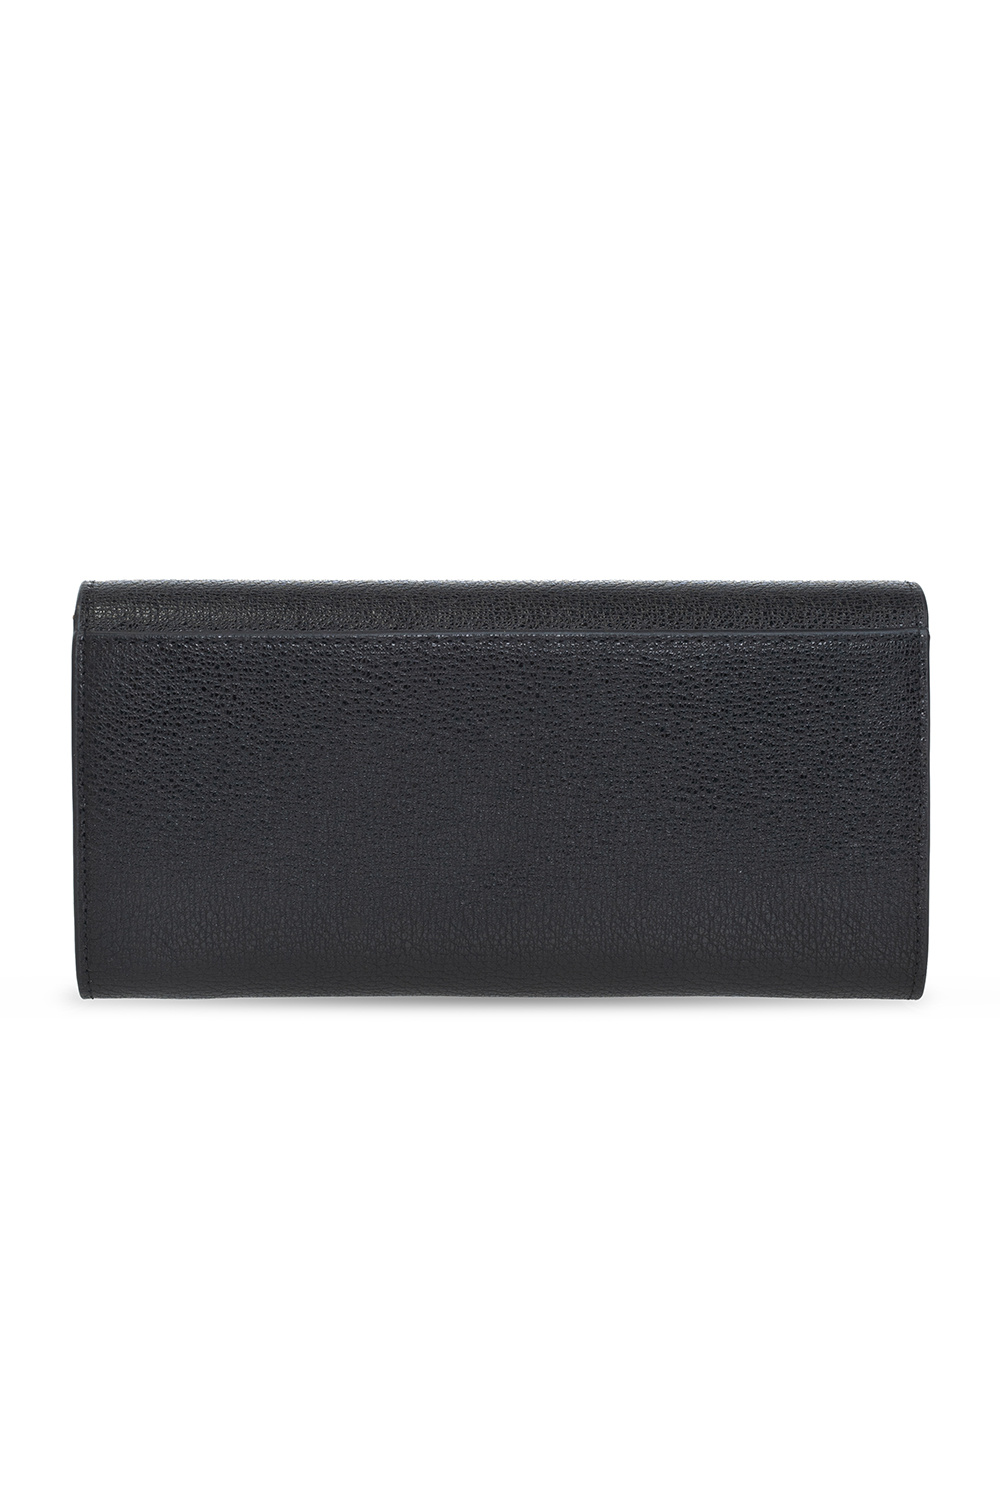 Furla ‘Magnolia’ wallet